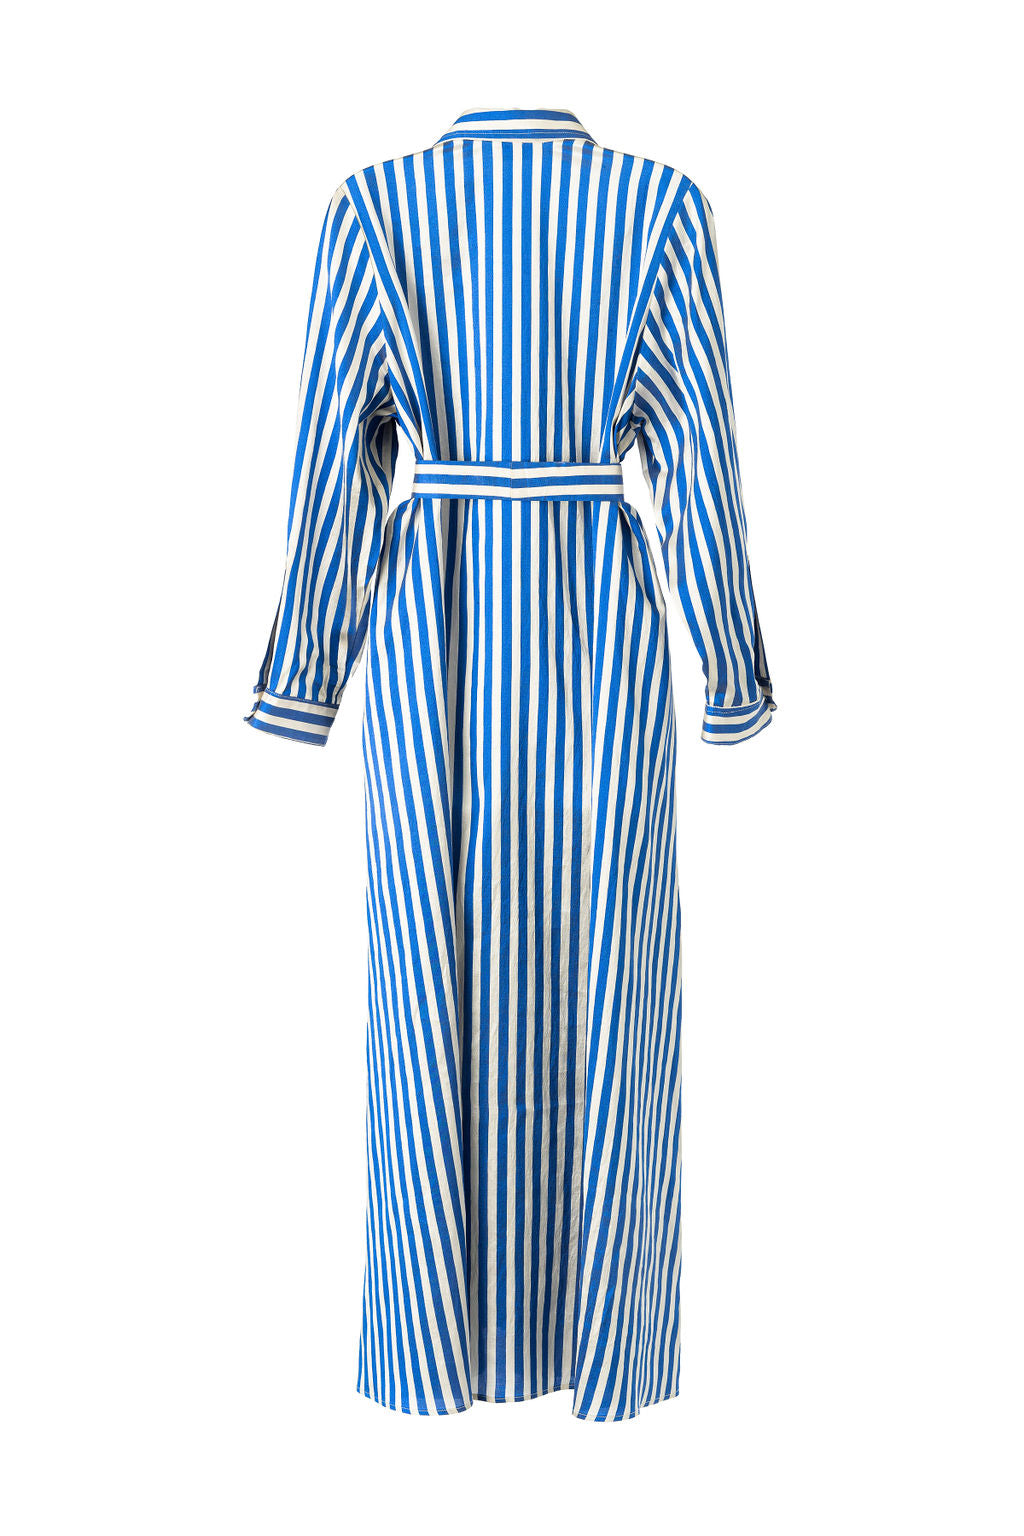 Eleanor Shirt Dress in Blue Stripe – Eleanor Leftwich